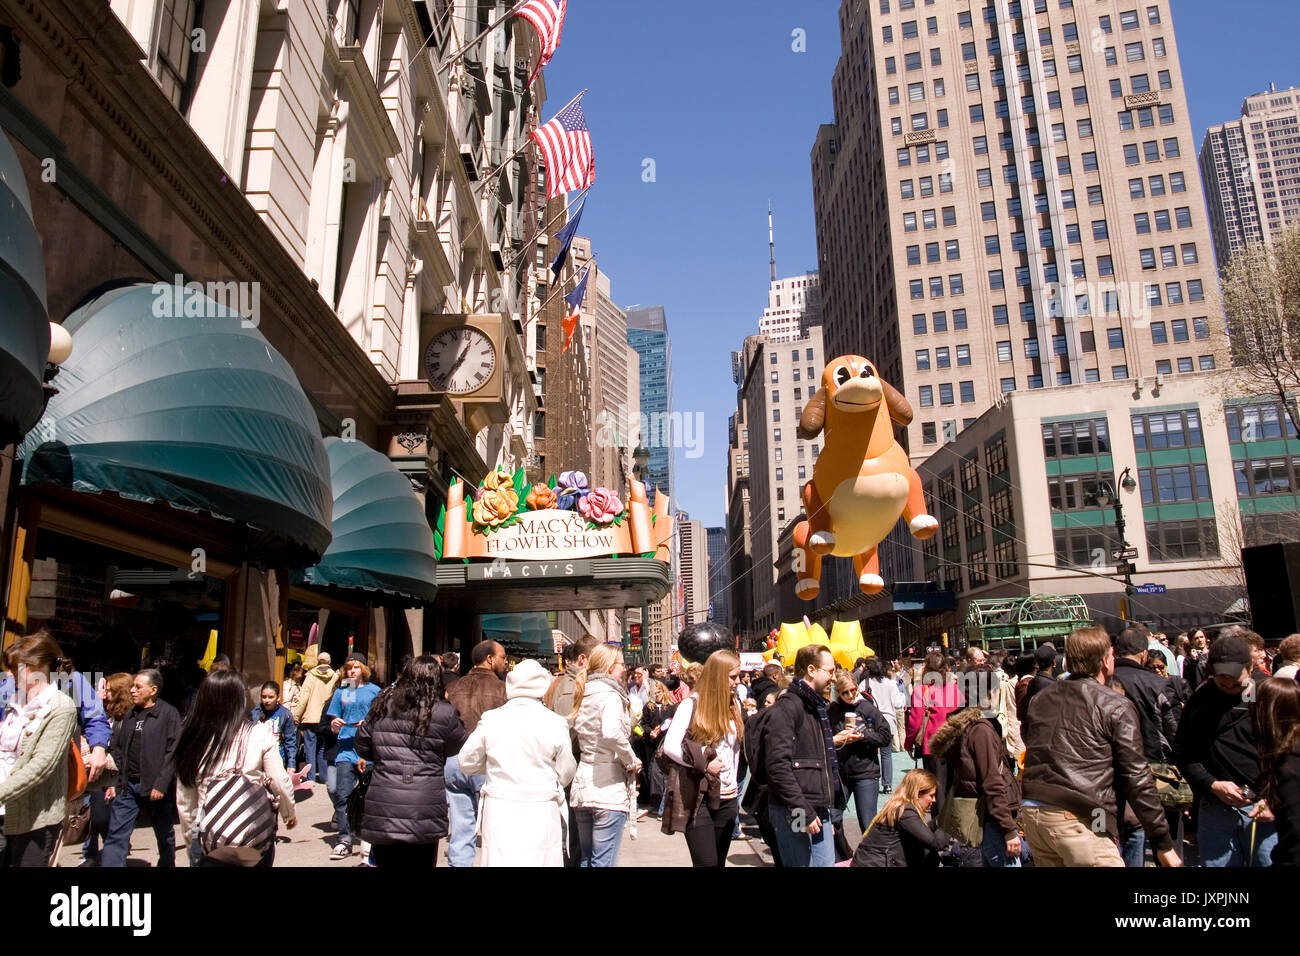 Anzeigen von Macy's Herald Square am Tag der Macy's Flower Show. Stockfoto